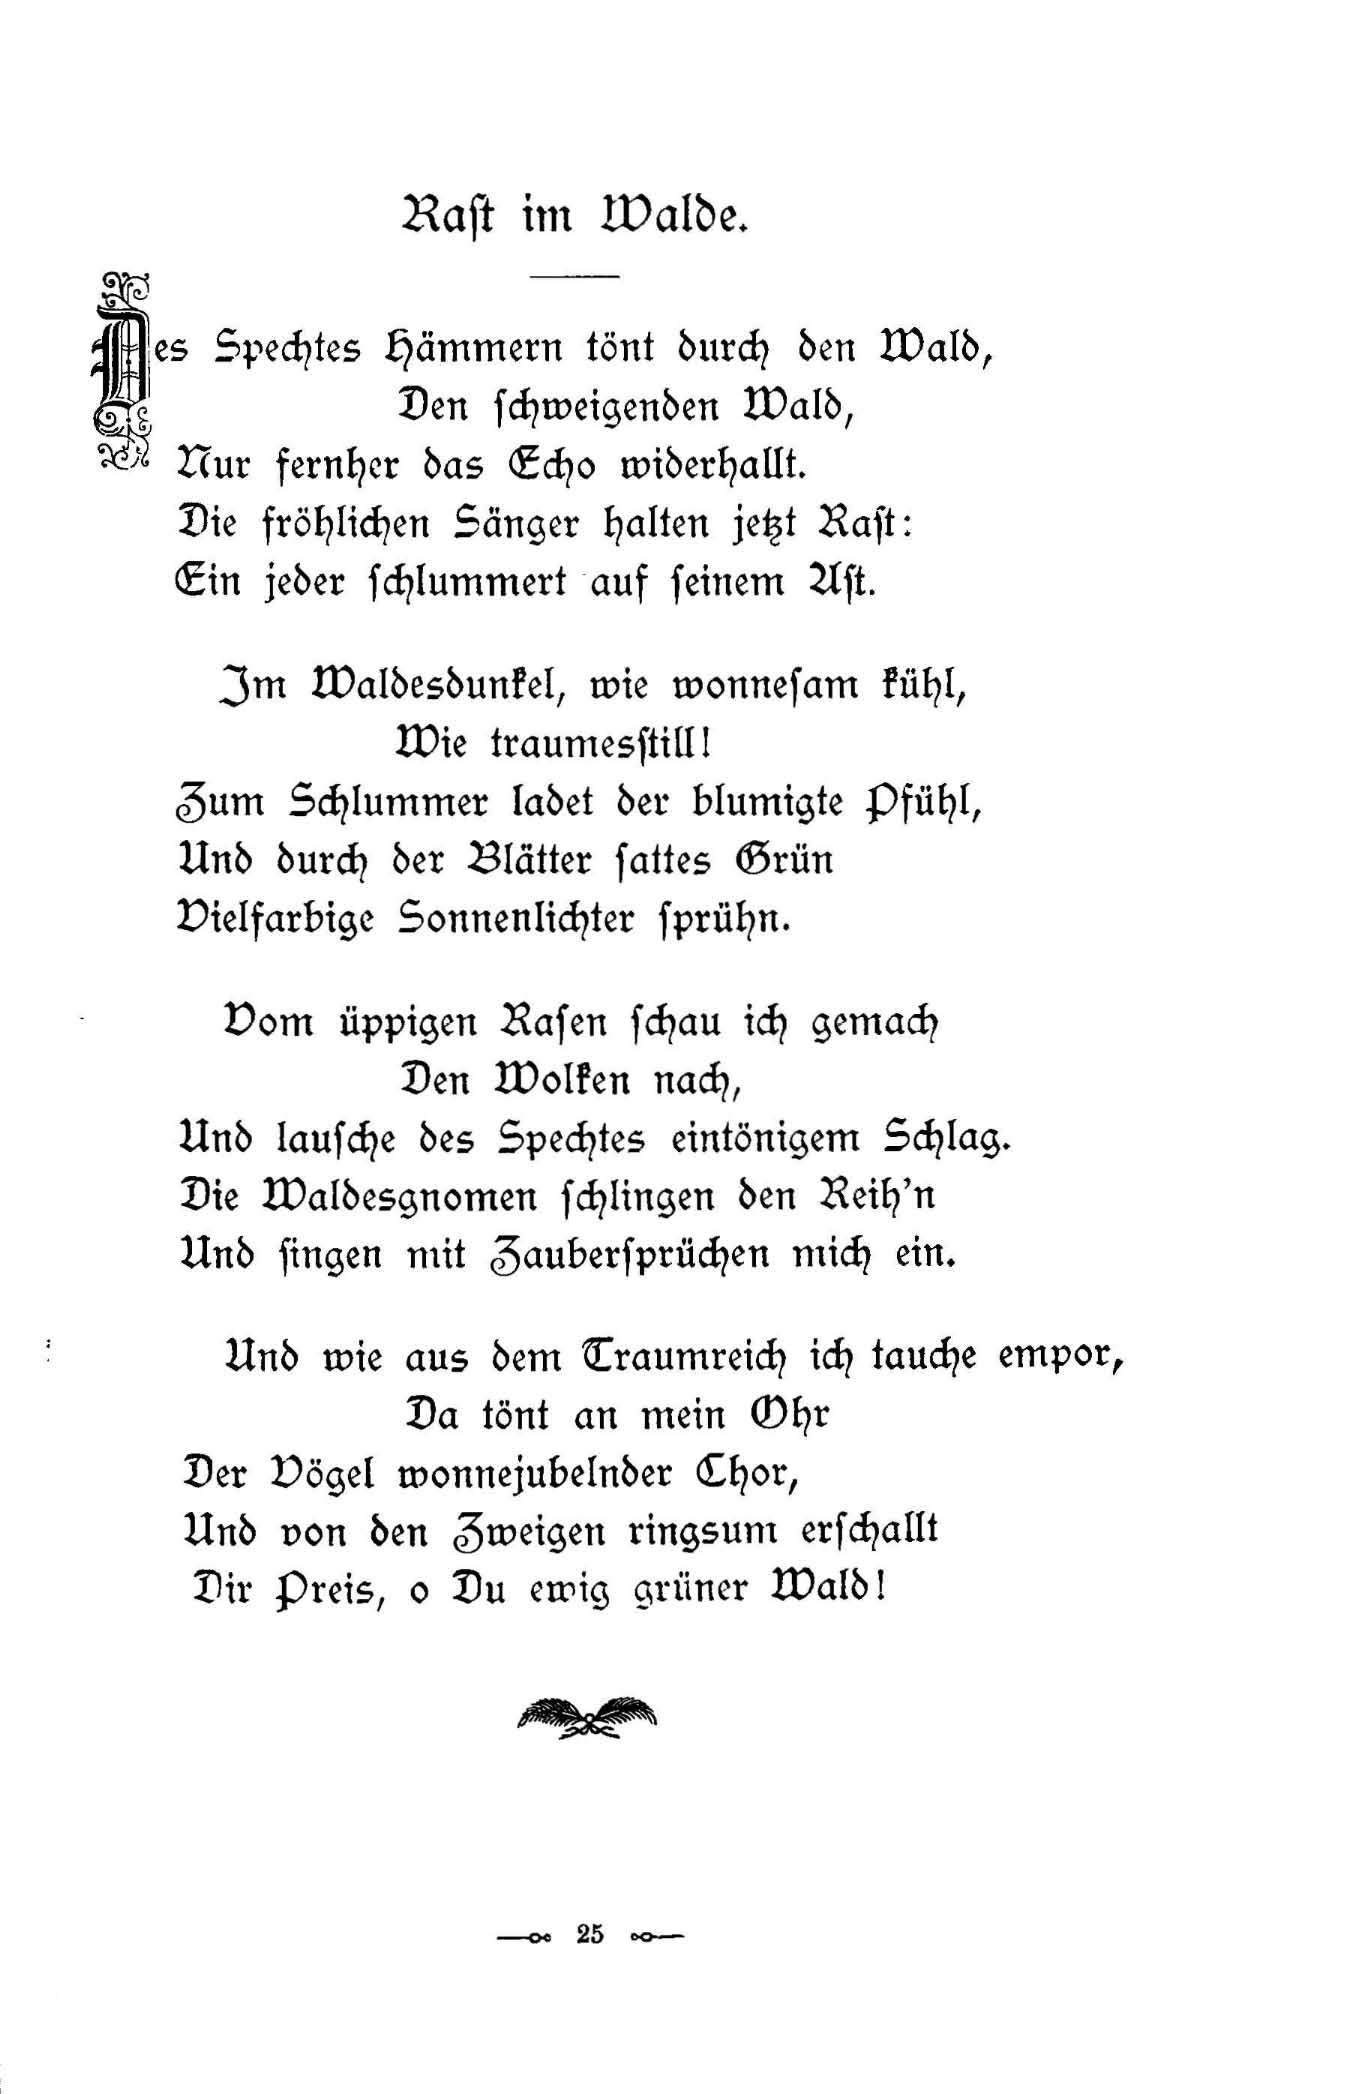 Rast im Walde (1896) | 1. (25) Haupttext